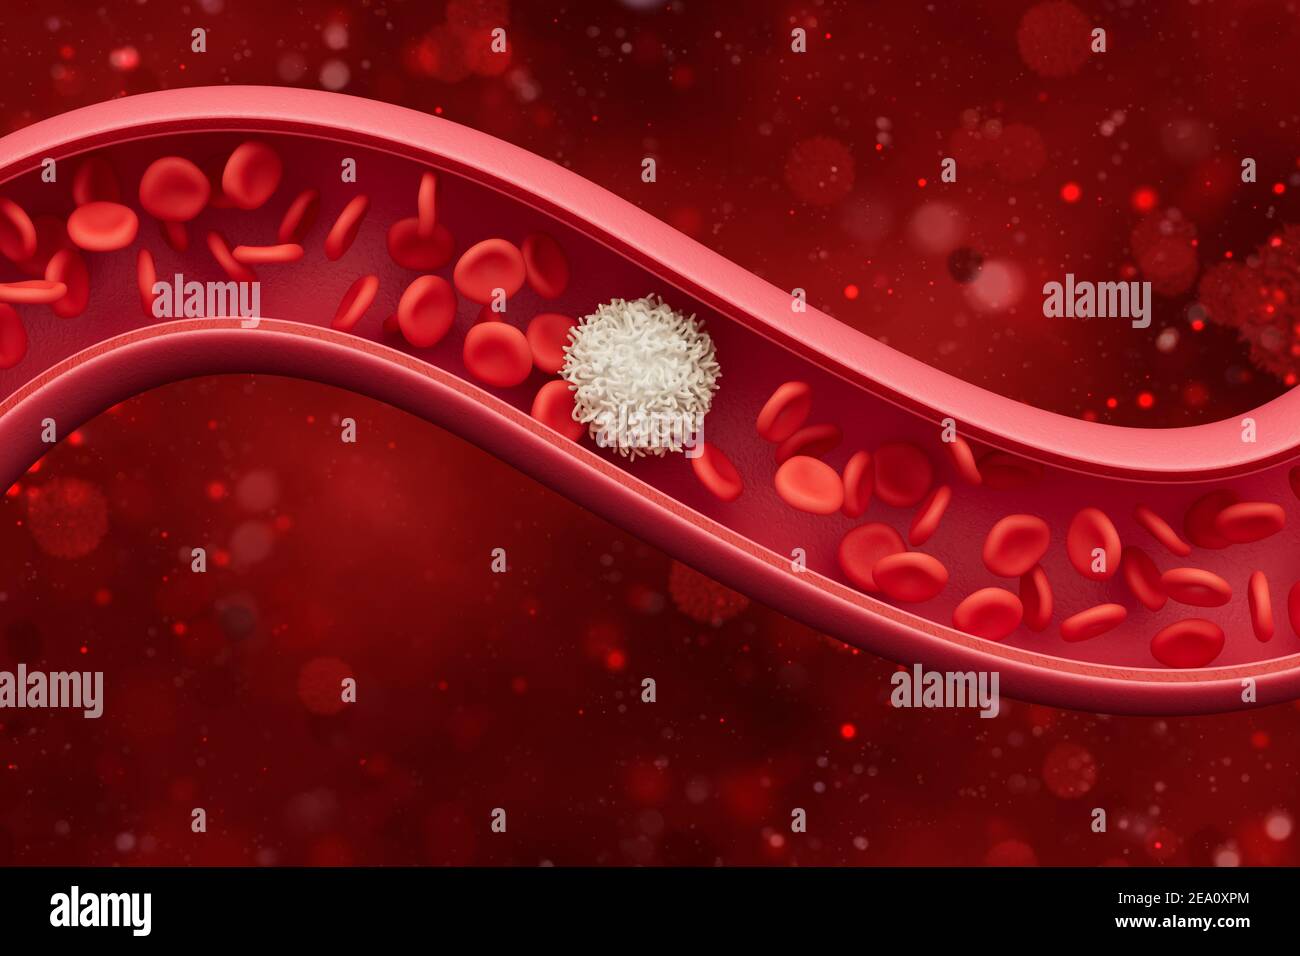 Globules rouges à l'intérieur d'une artère, veine. Flux sanguin à l'intérieur d'un organisme vivant. Concept scientifique et médical. 3 D illustration. Banque D'Images